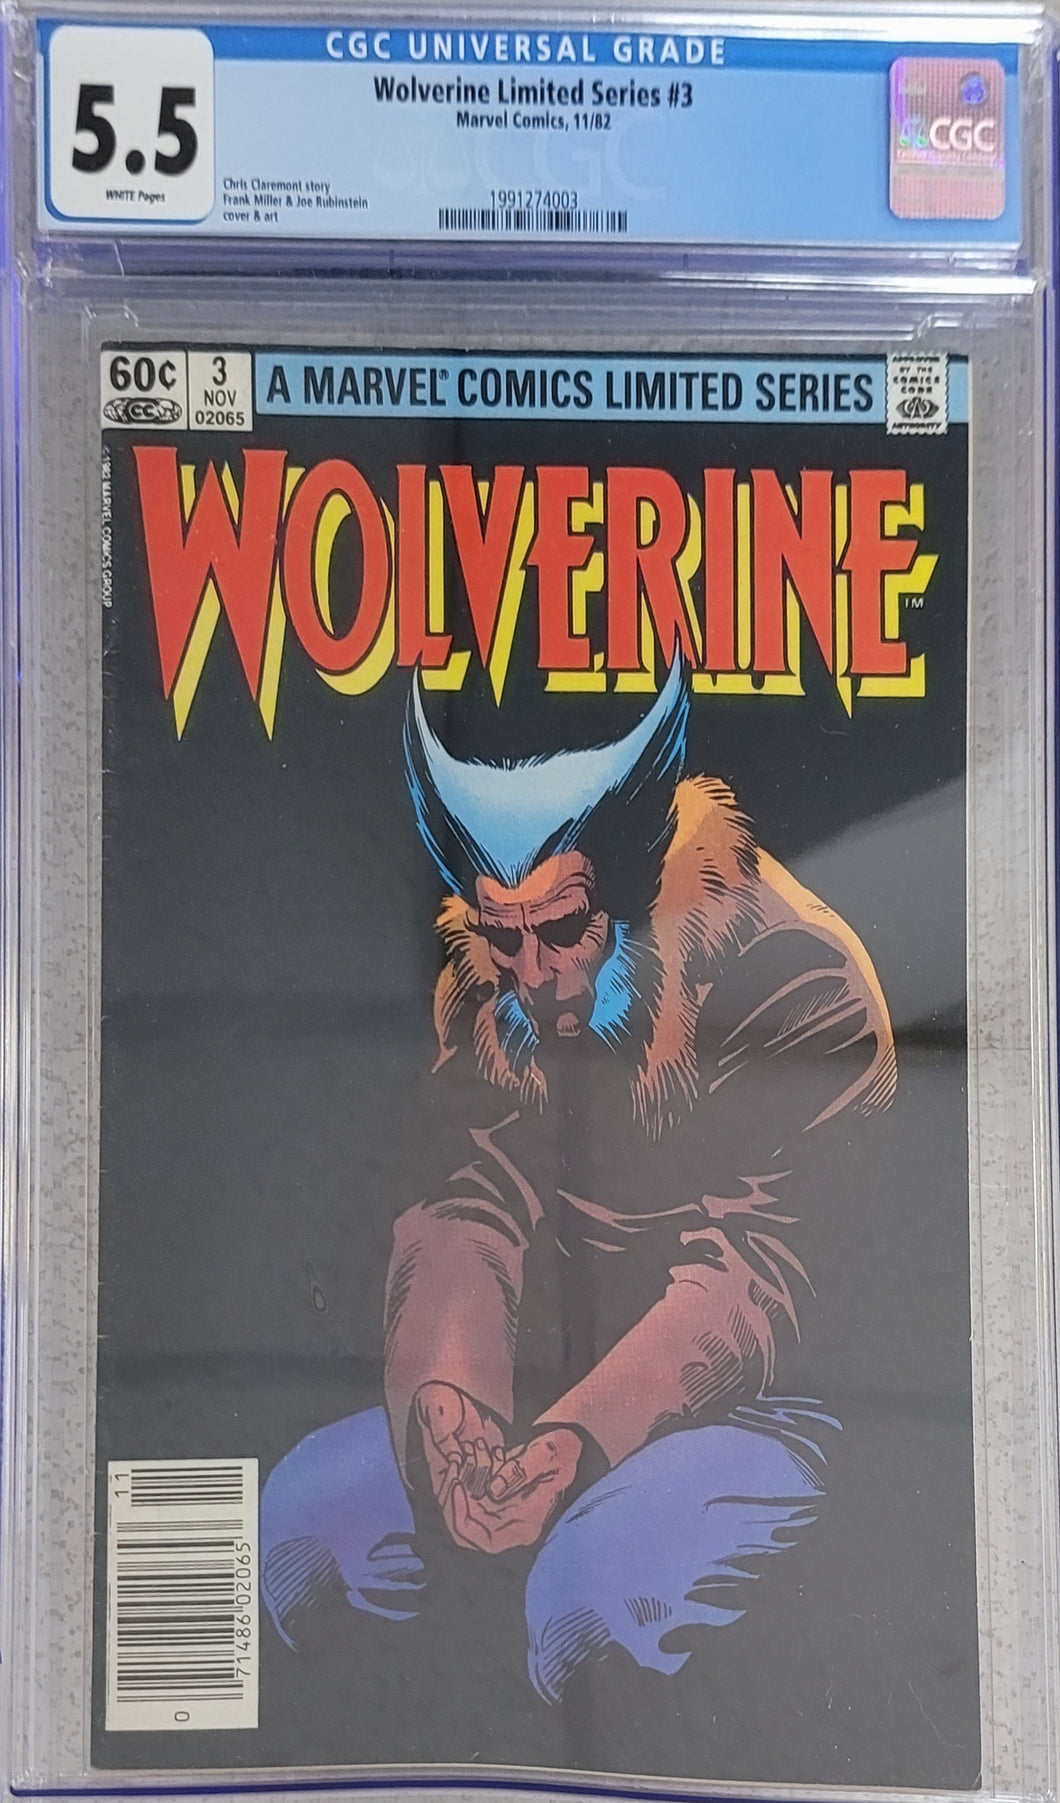 Wolverine (1982 Limited Series) #3 CGC Frank Miller Joe Rubinstein Chris Claremont